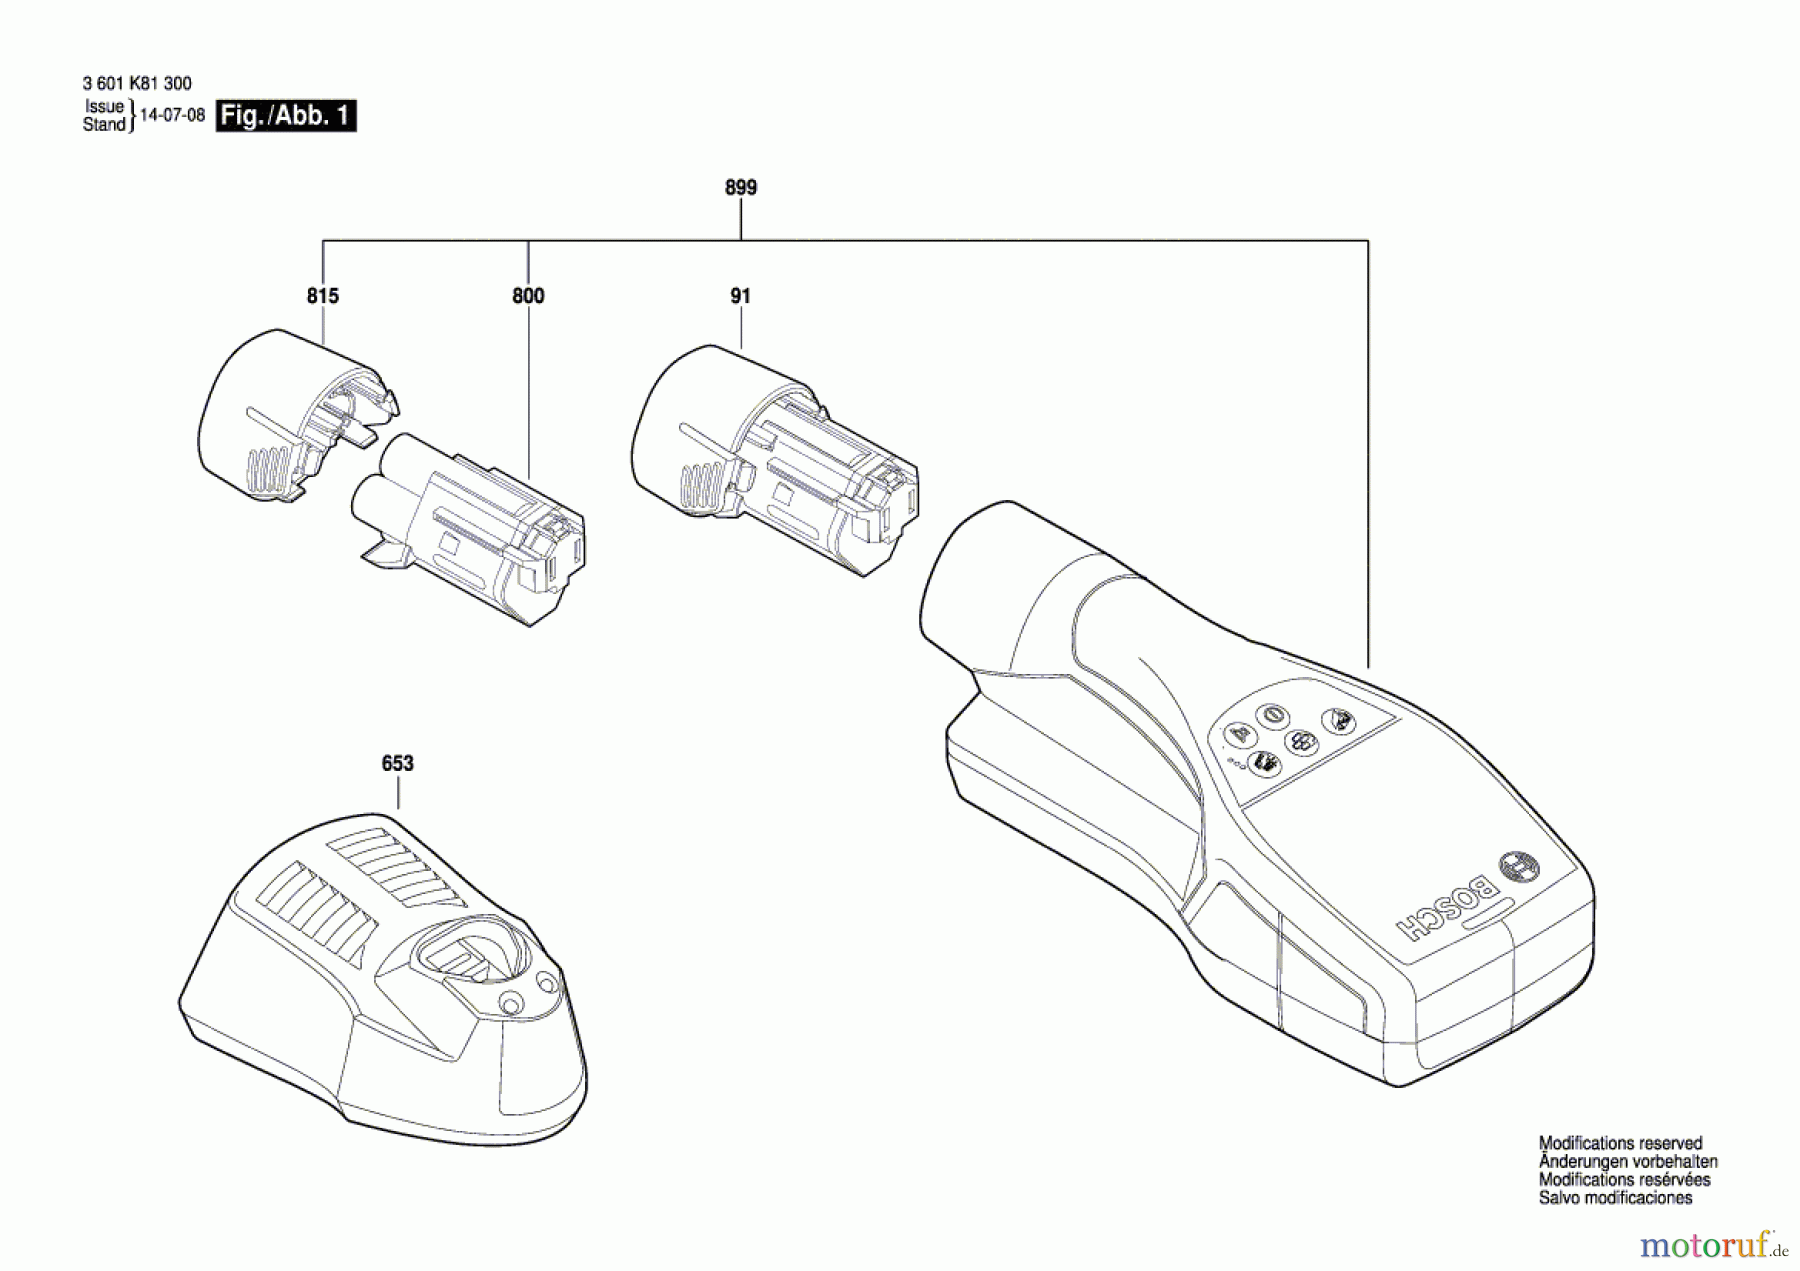  Bosch Werkzeug Universalortungsgerät D-tect 120 Seite 1